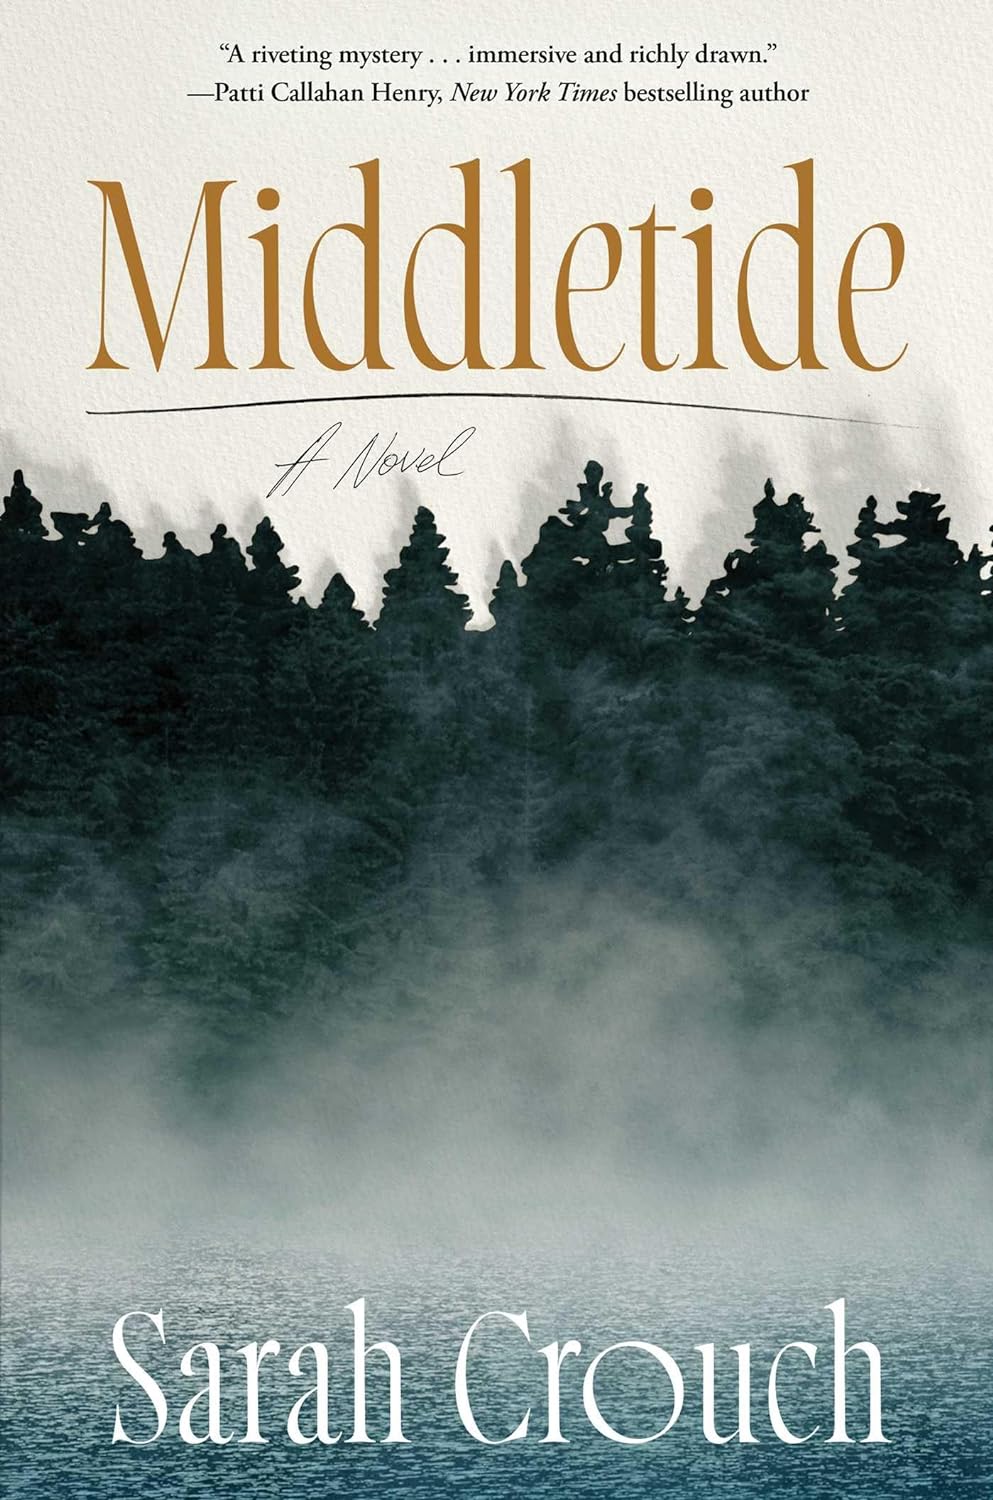 Image for "Middletide"